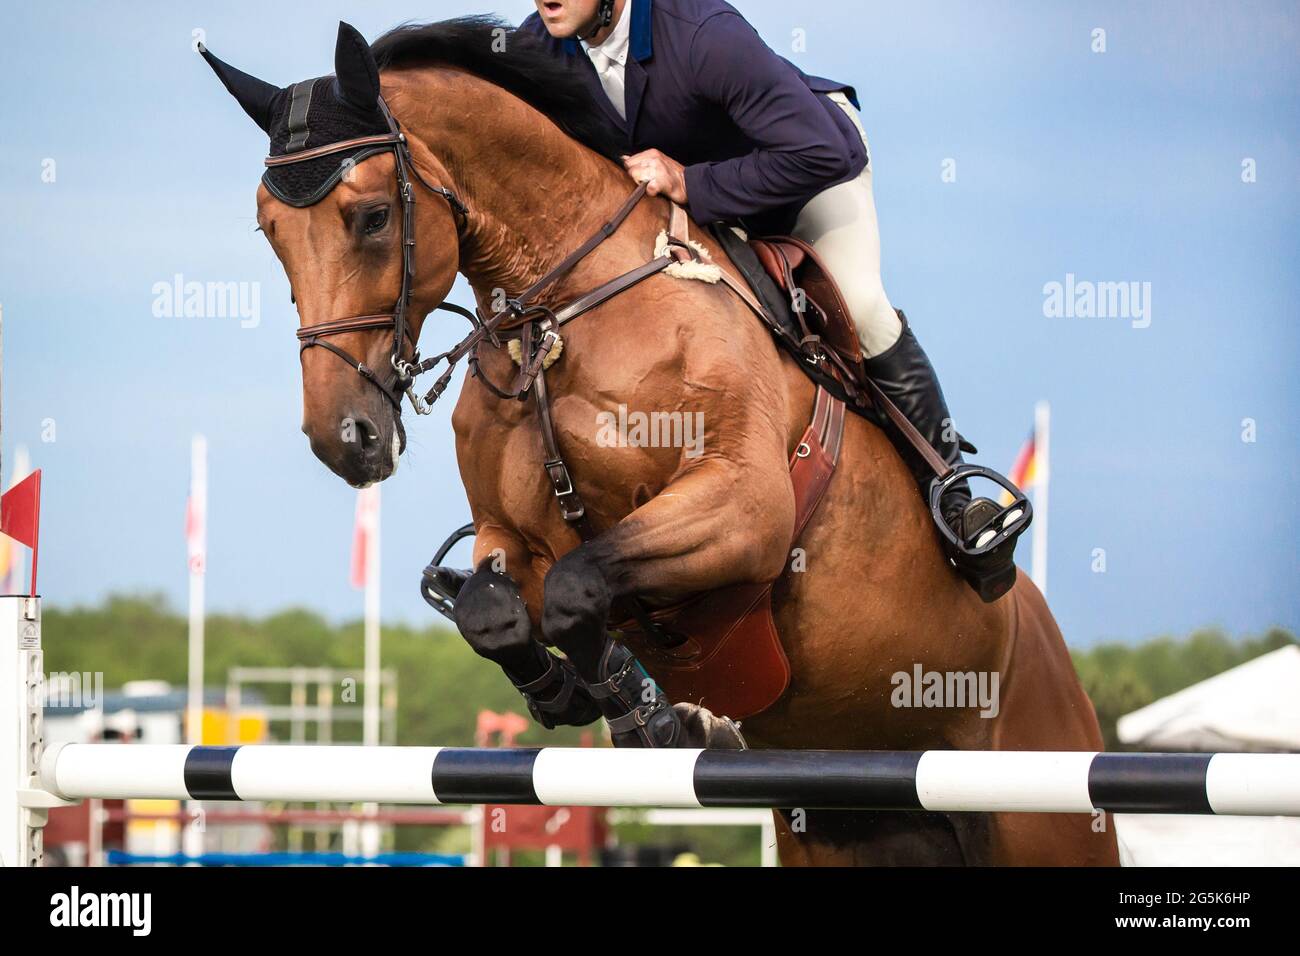 Sport equestri a tema fotografico: Salto a cavallo, salto con spettacolo, equitazione. Foto Stock